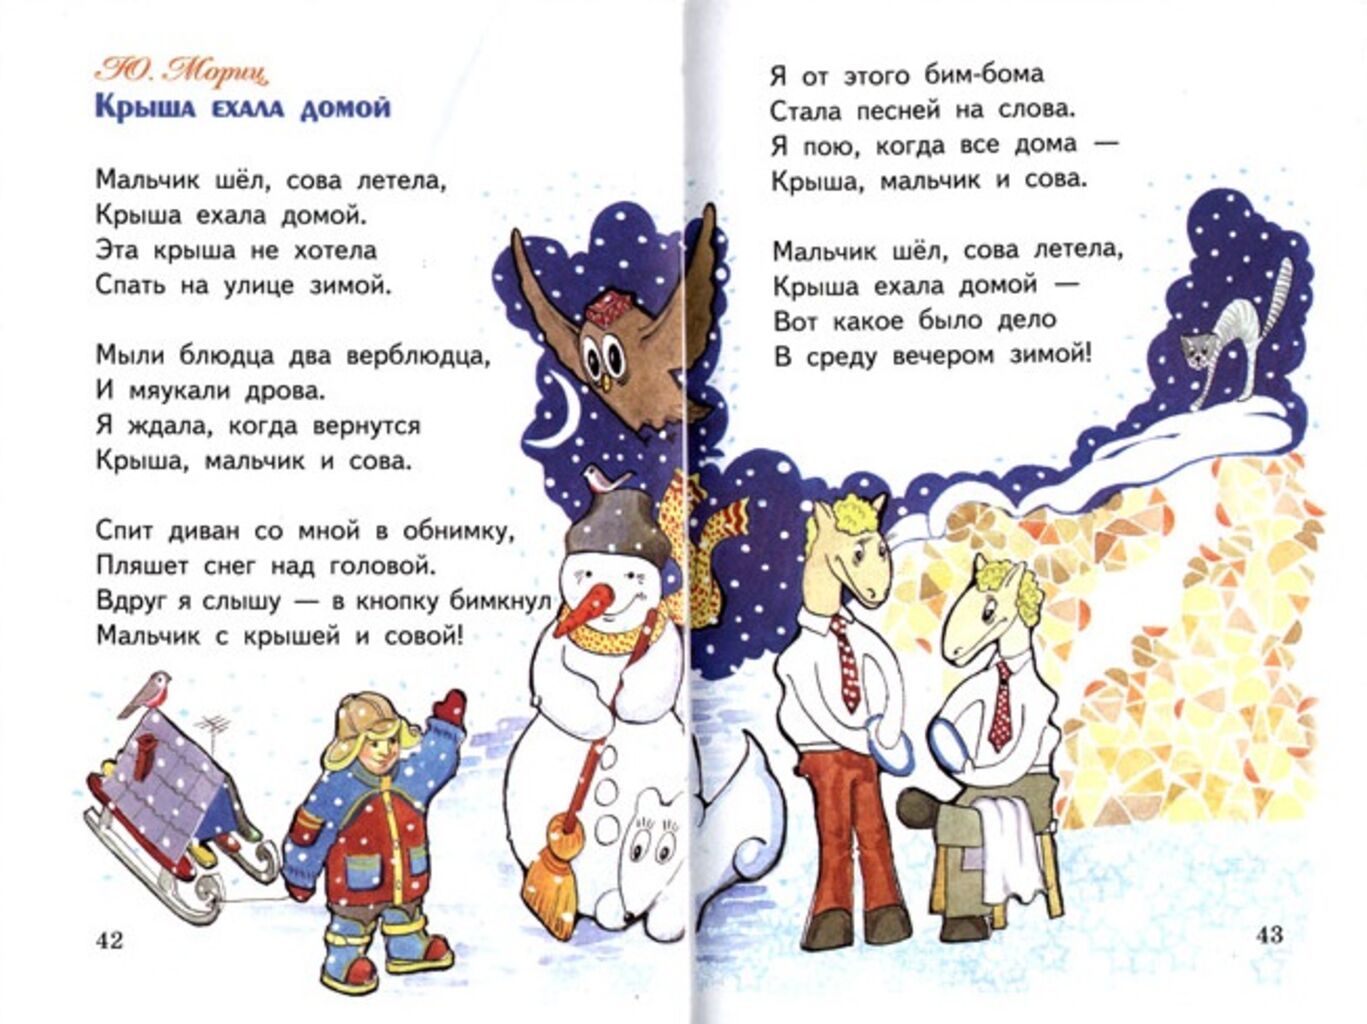 Стихотворение вывескам. Юнна Мориц крыша ехала домой. Смешные стихи для детей. Смешные детские стихи. Смешные стихотг для детей.